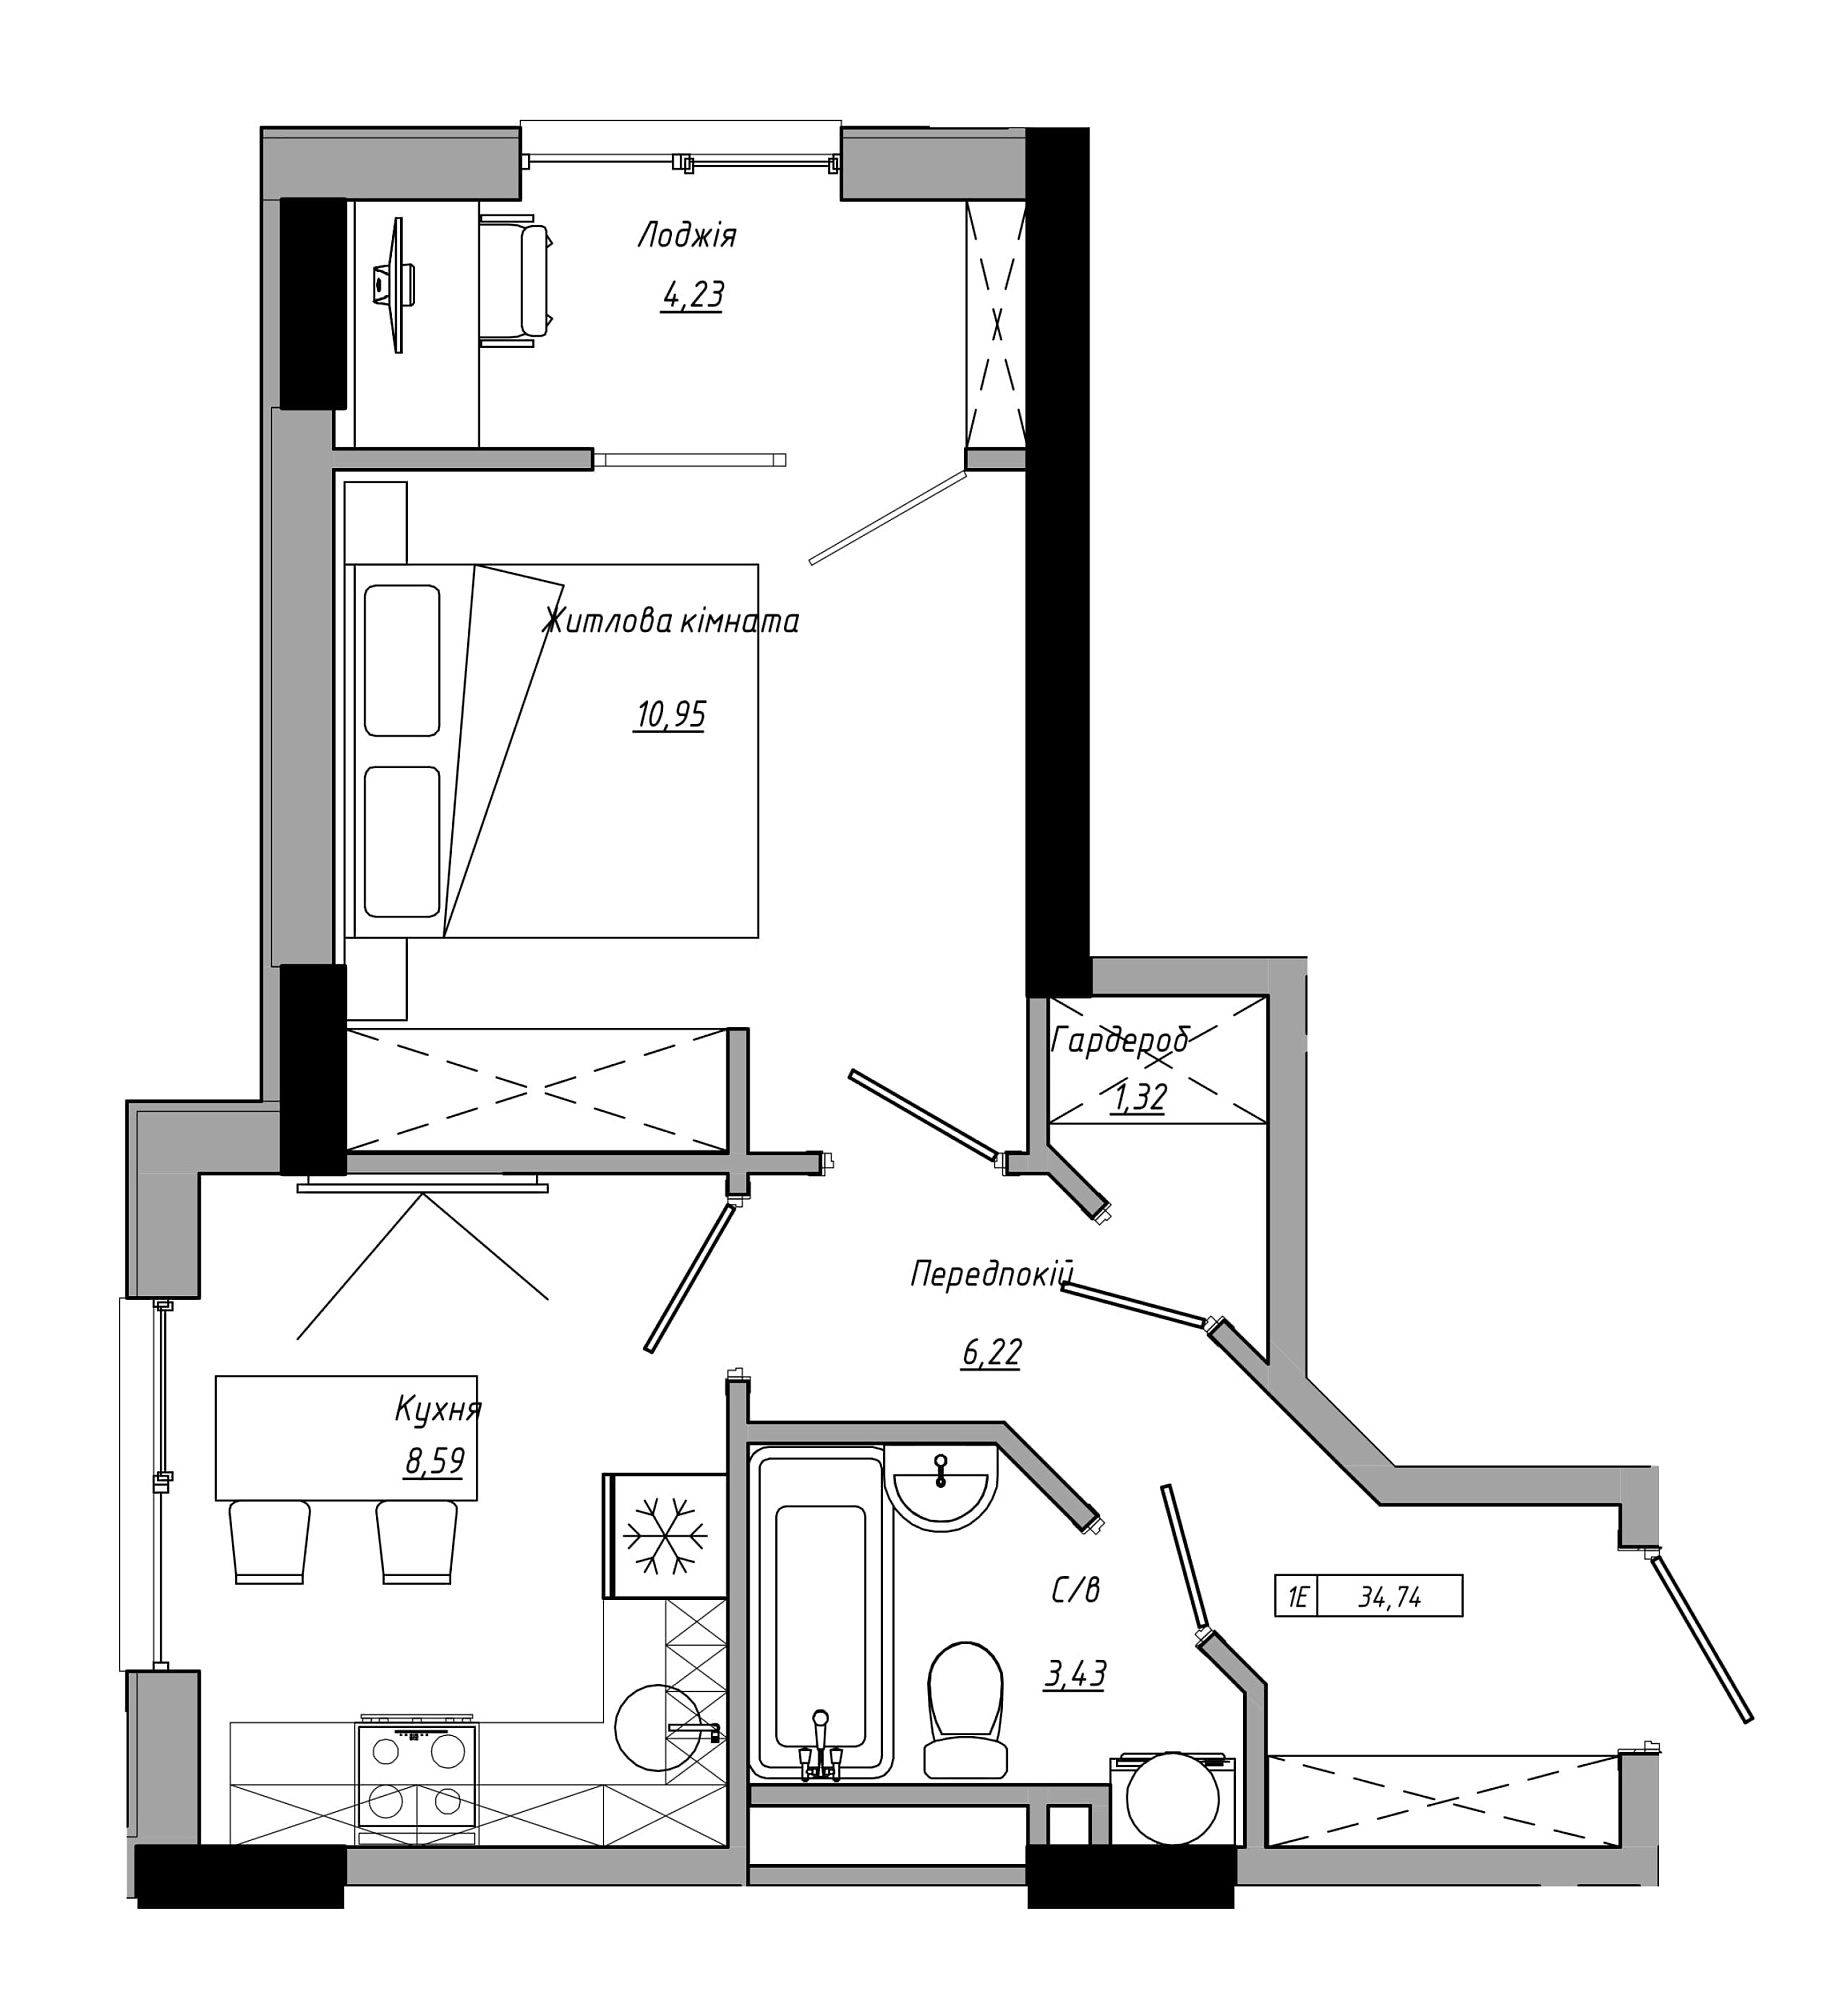 Планування 1-к квартира площею 34.74м2, AB-21-08/00009.